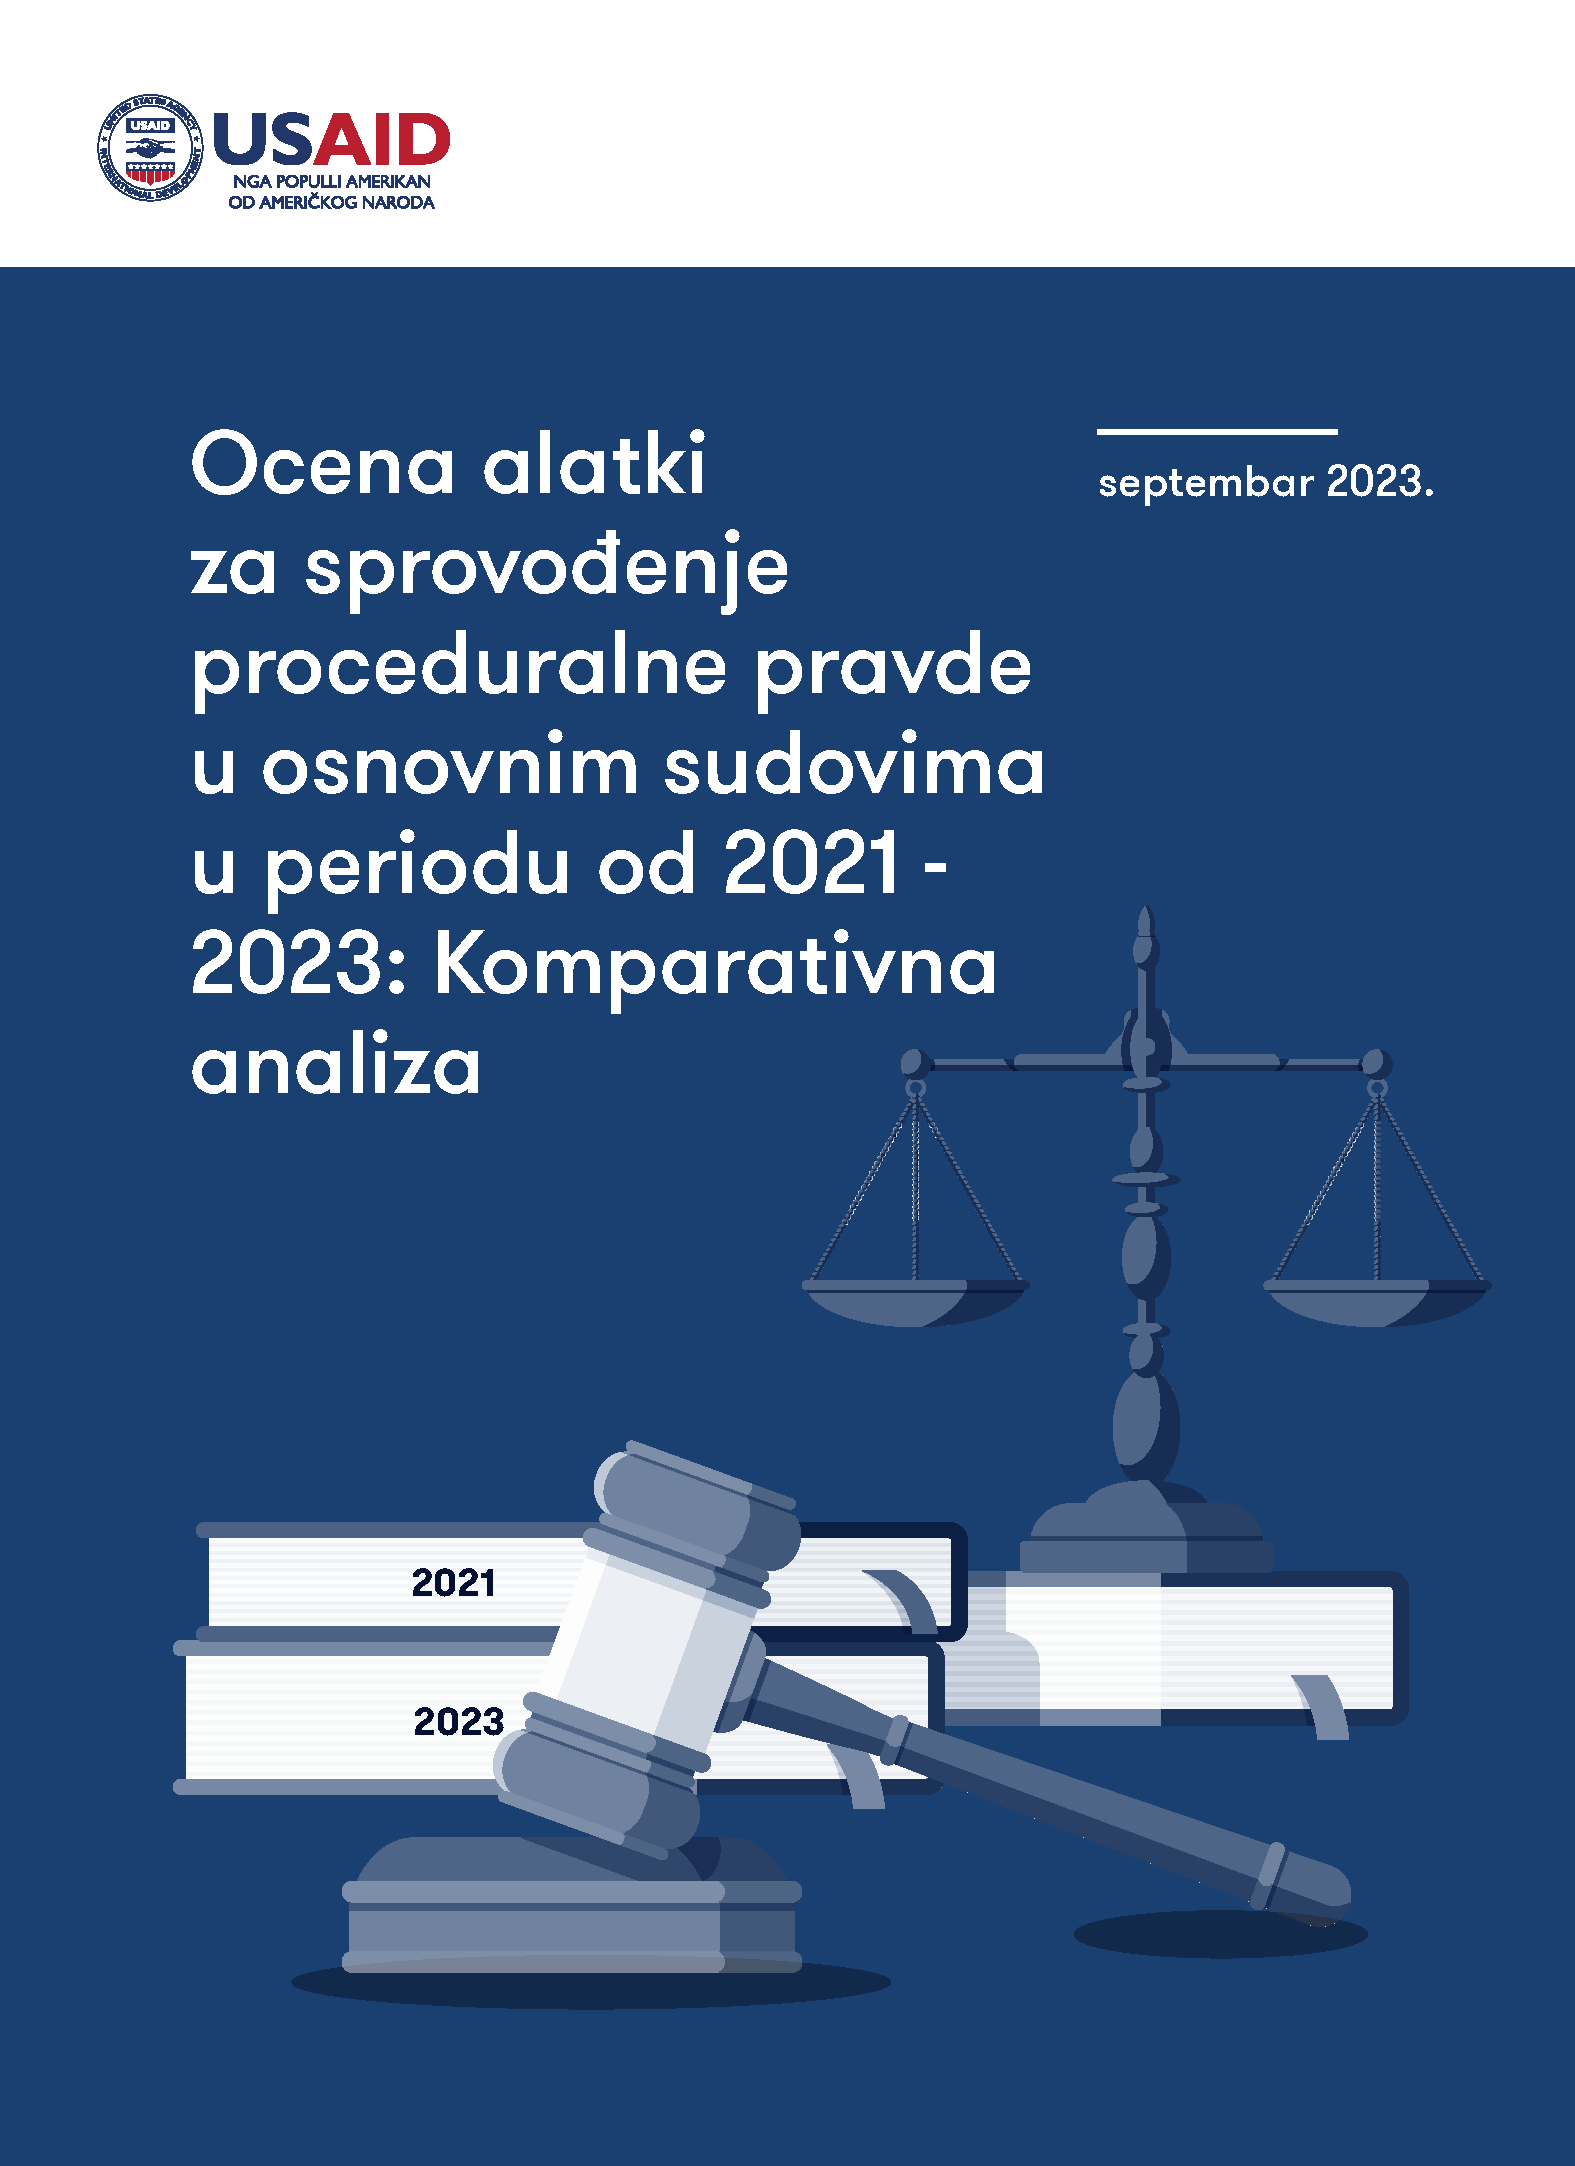 Ocena alatki za sprovođenje proceduralne pravde u osnovnim sudovima u periodu od 2021 – 2023: Komparativna analiza